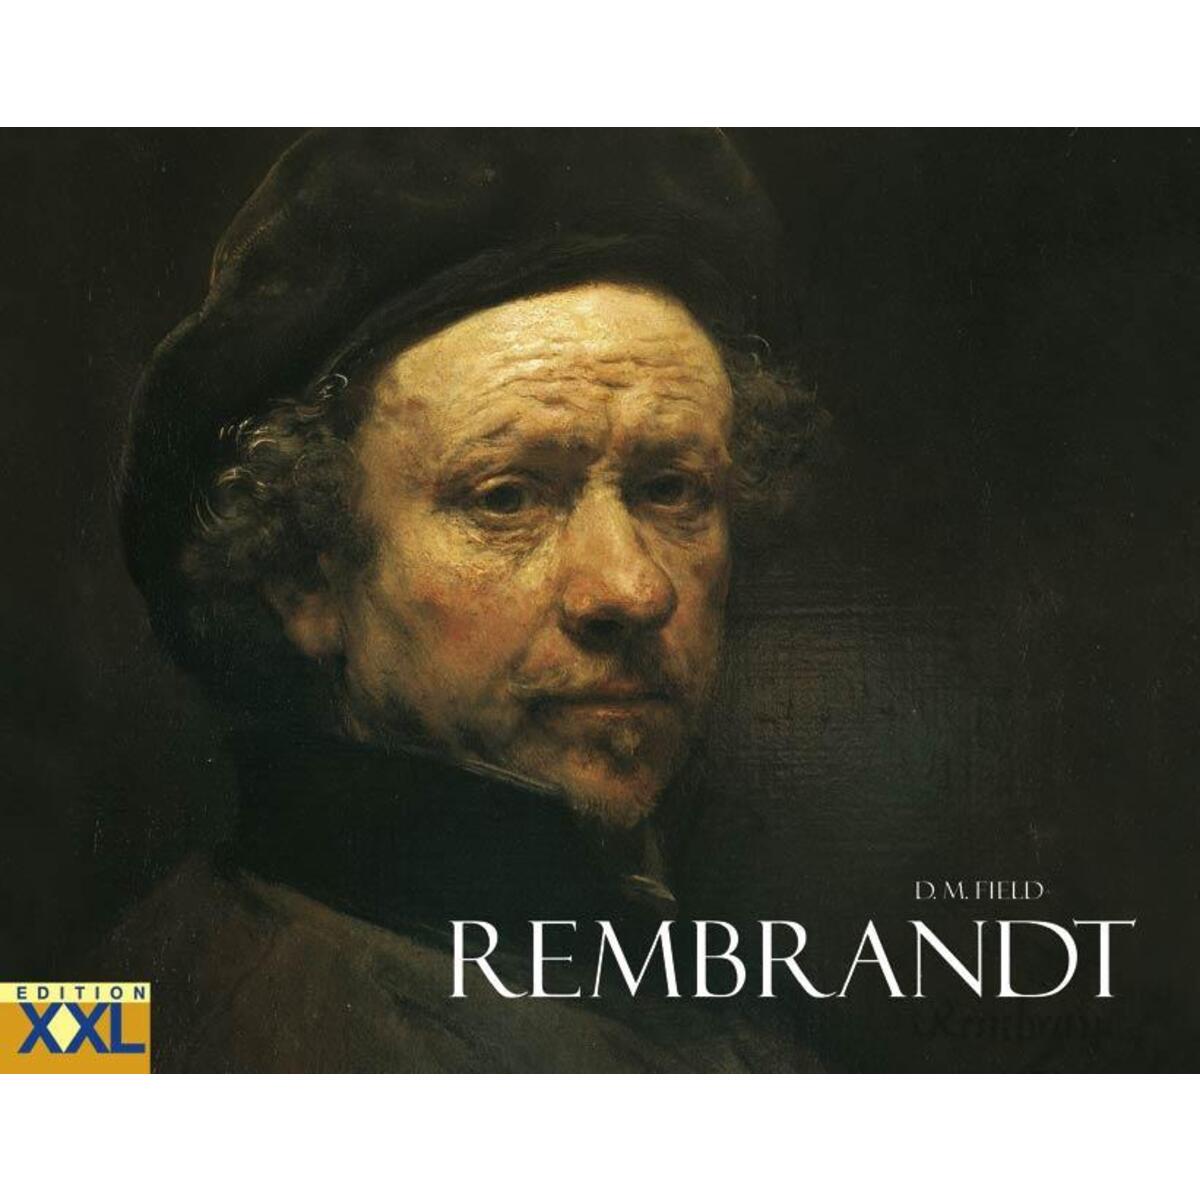 Rembrandt von Edition XXL